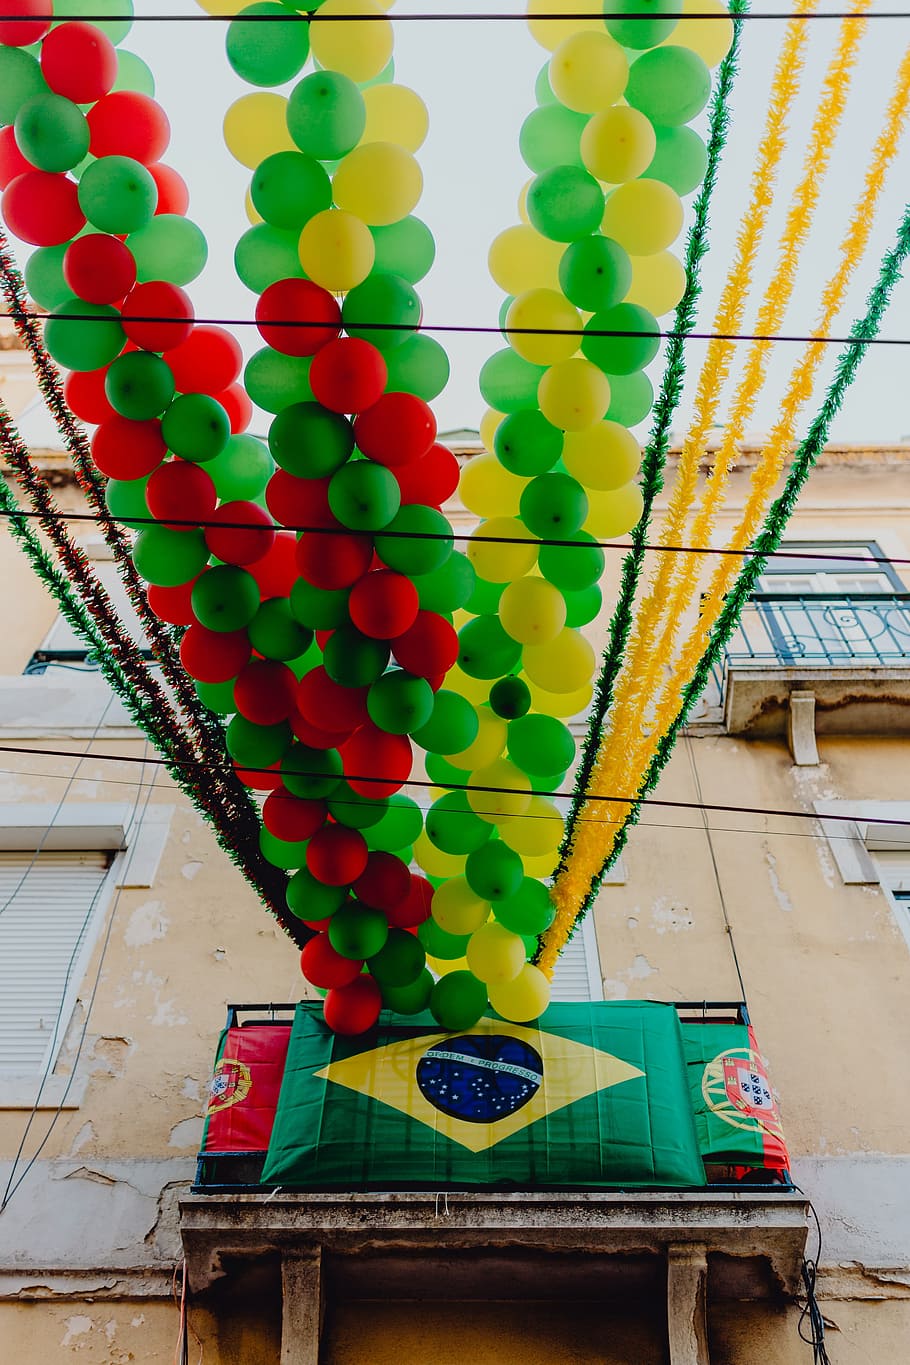 ruas, decorado, festa de santo antônio, lisboa, portugal, feliz, cidade, europa, decorações, viagem